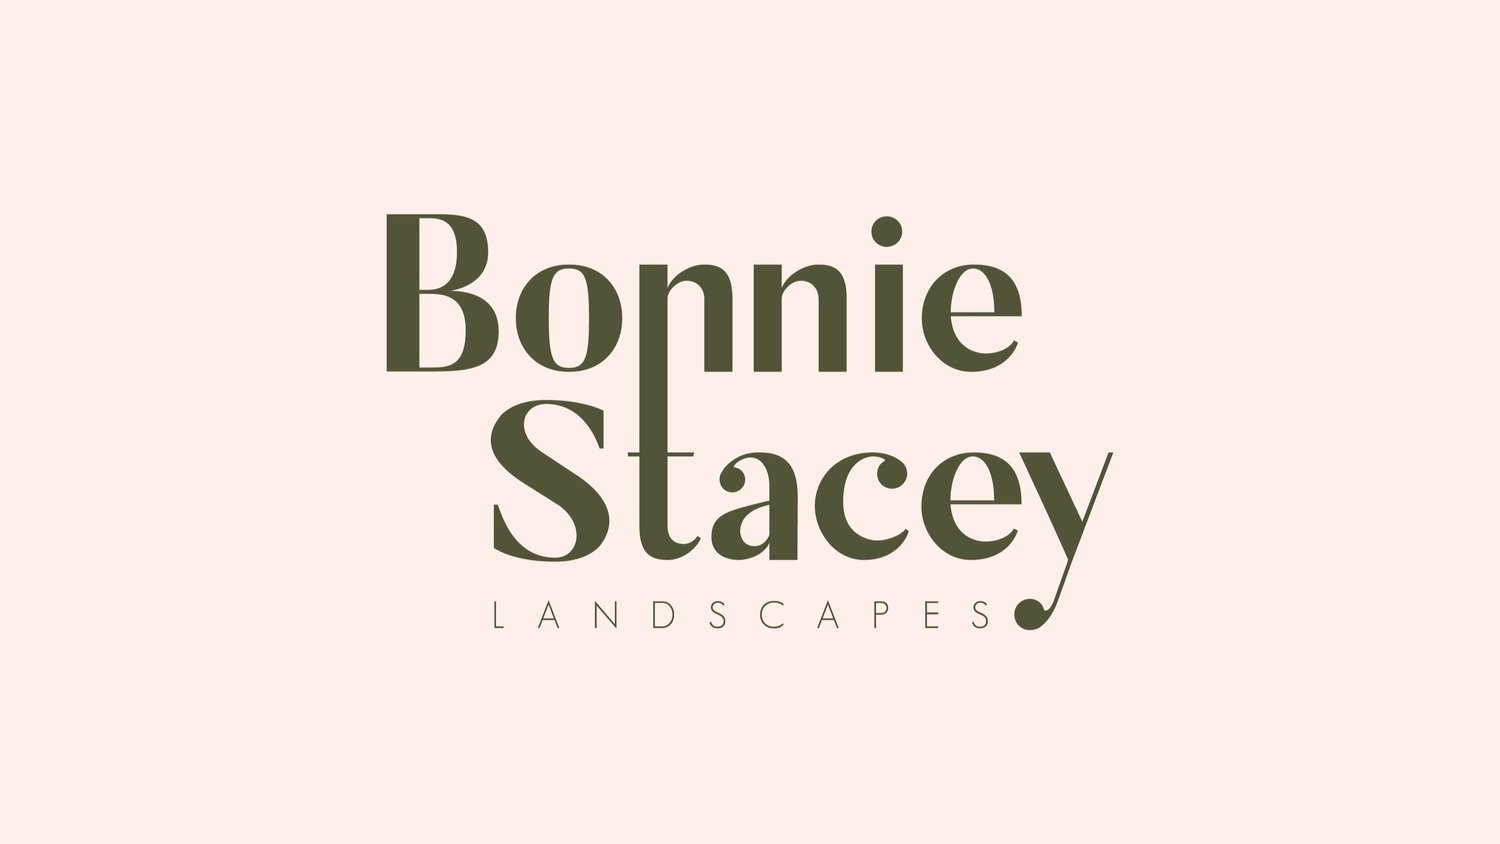 Bonnie Stacey Landscapes